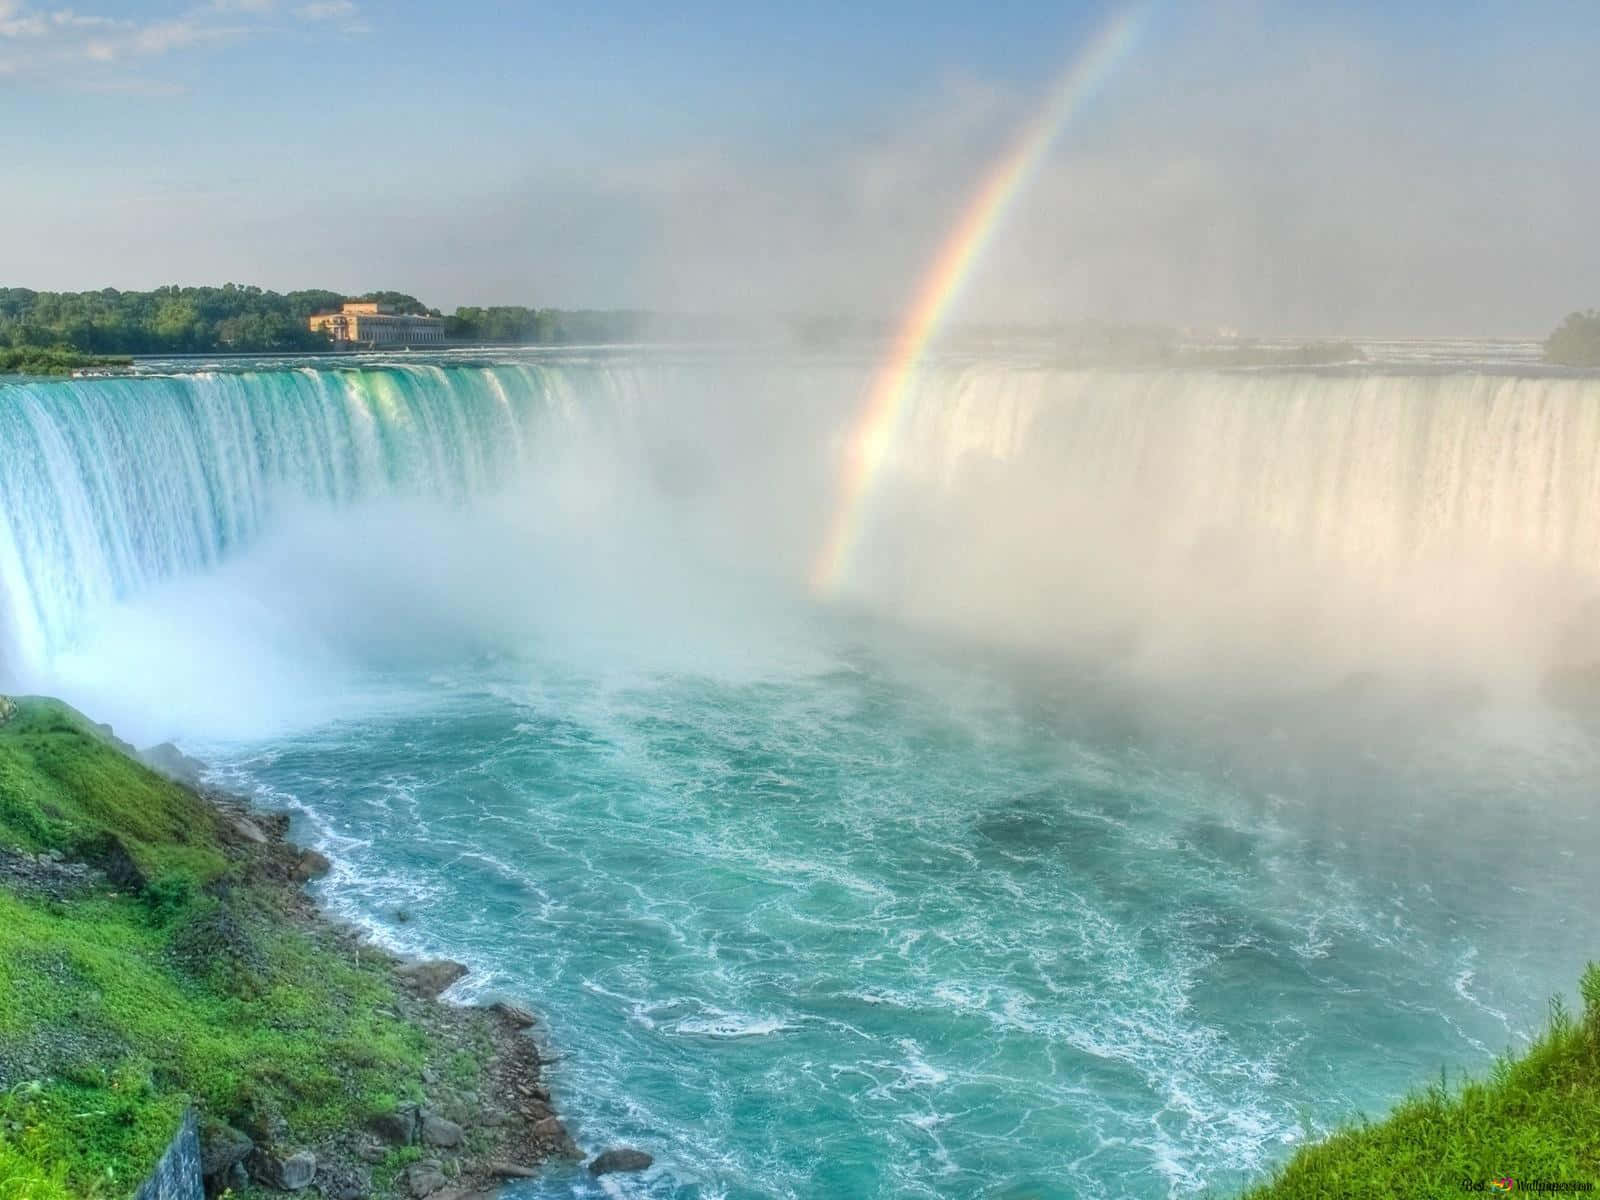 Stunning landscapes found at Niagara Falls